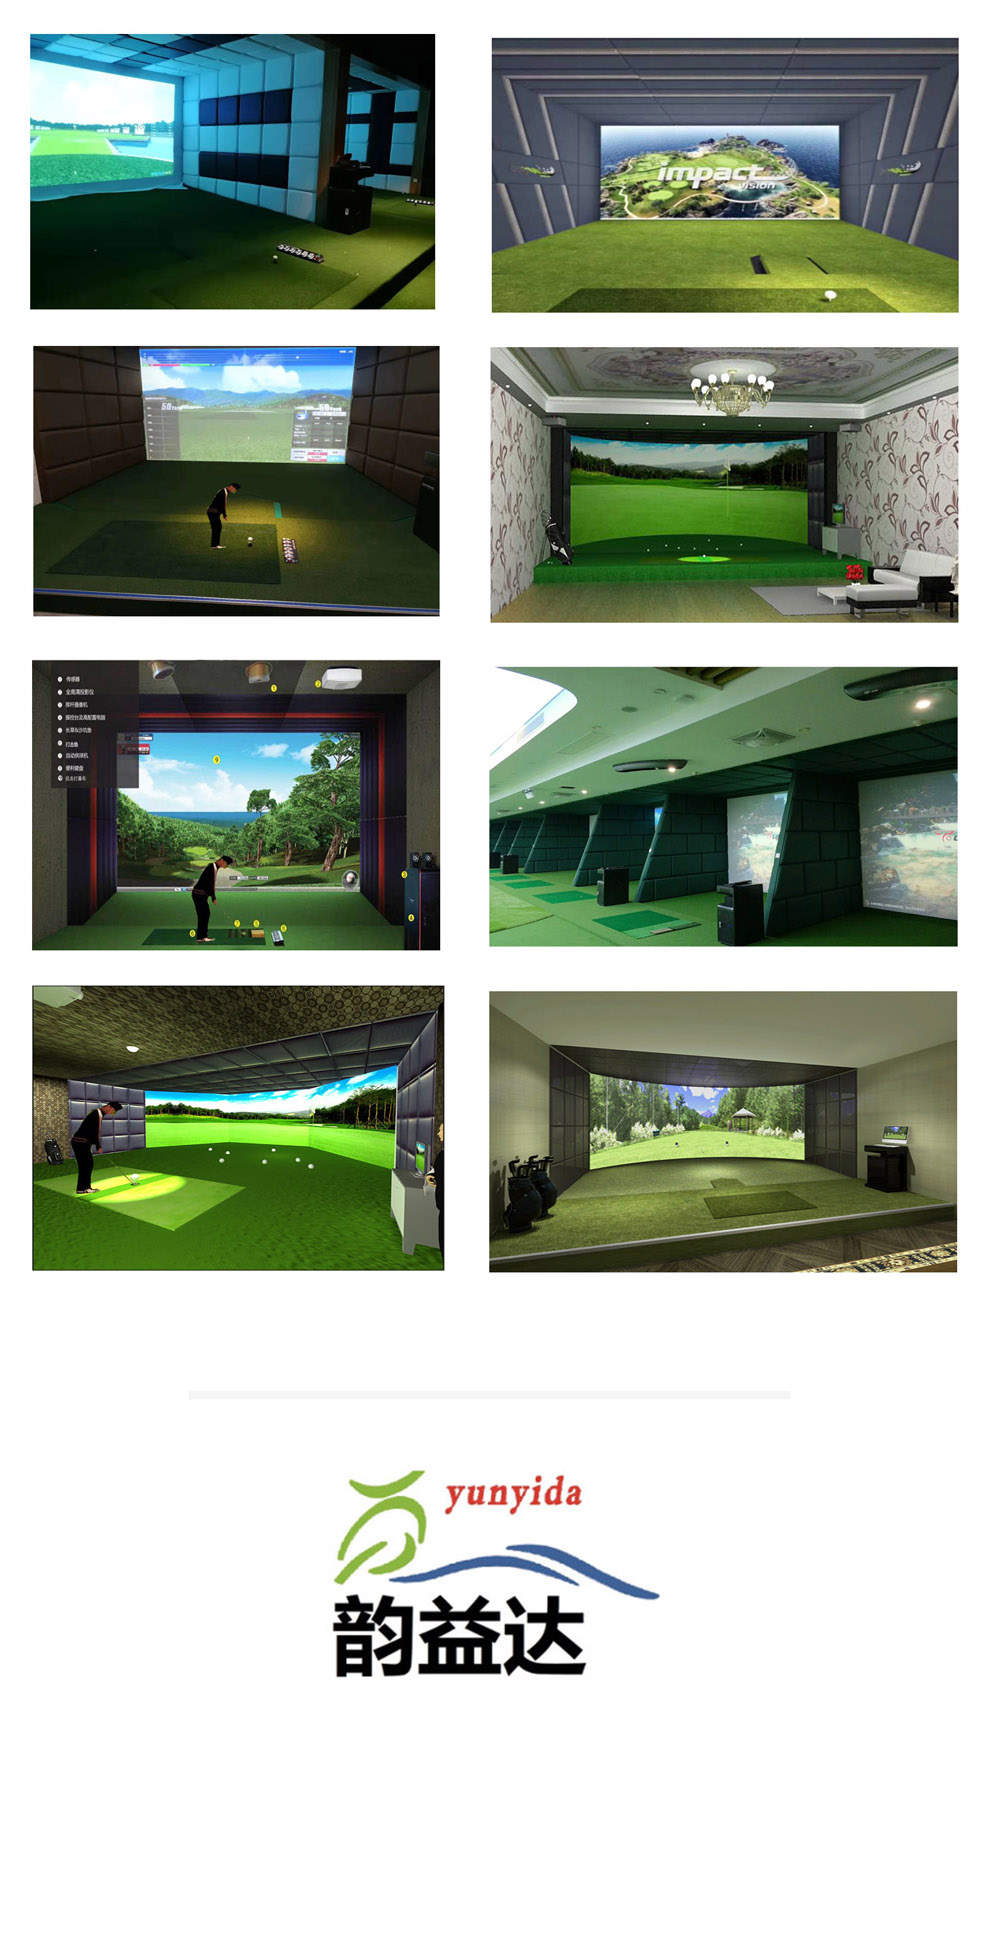 高尔夫模拟器系统 35.jpg